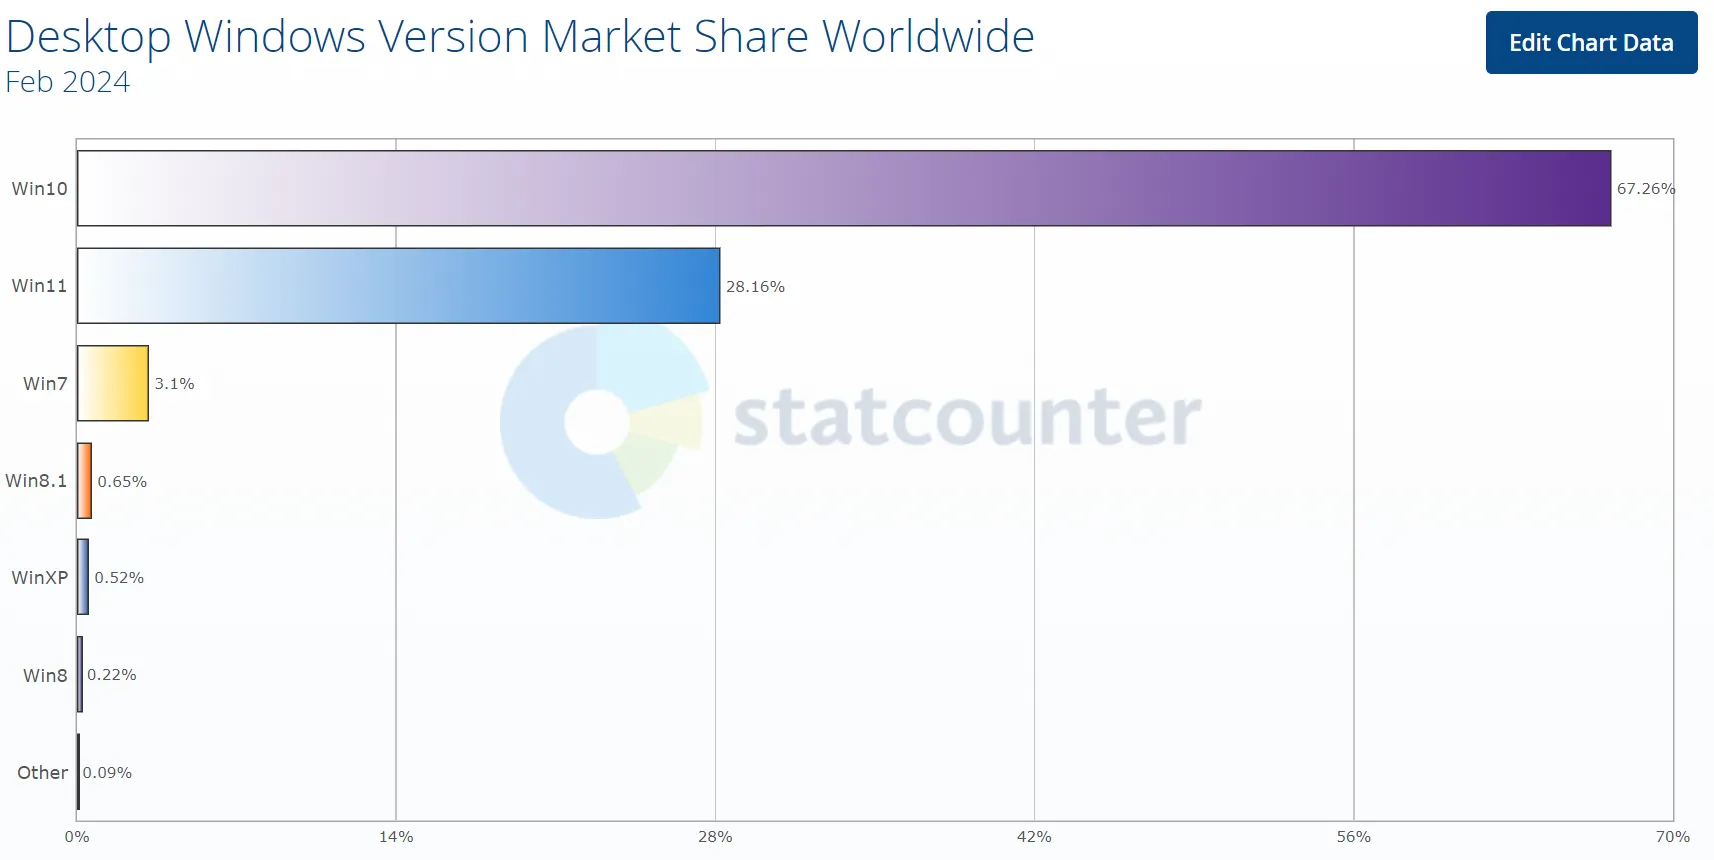 Marktanteil der Desktop-Windows-Version weltweit